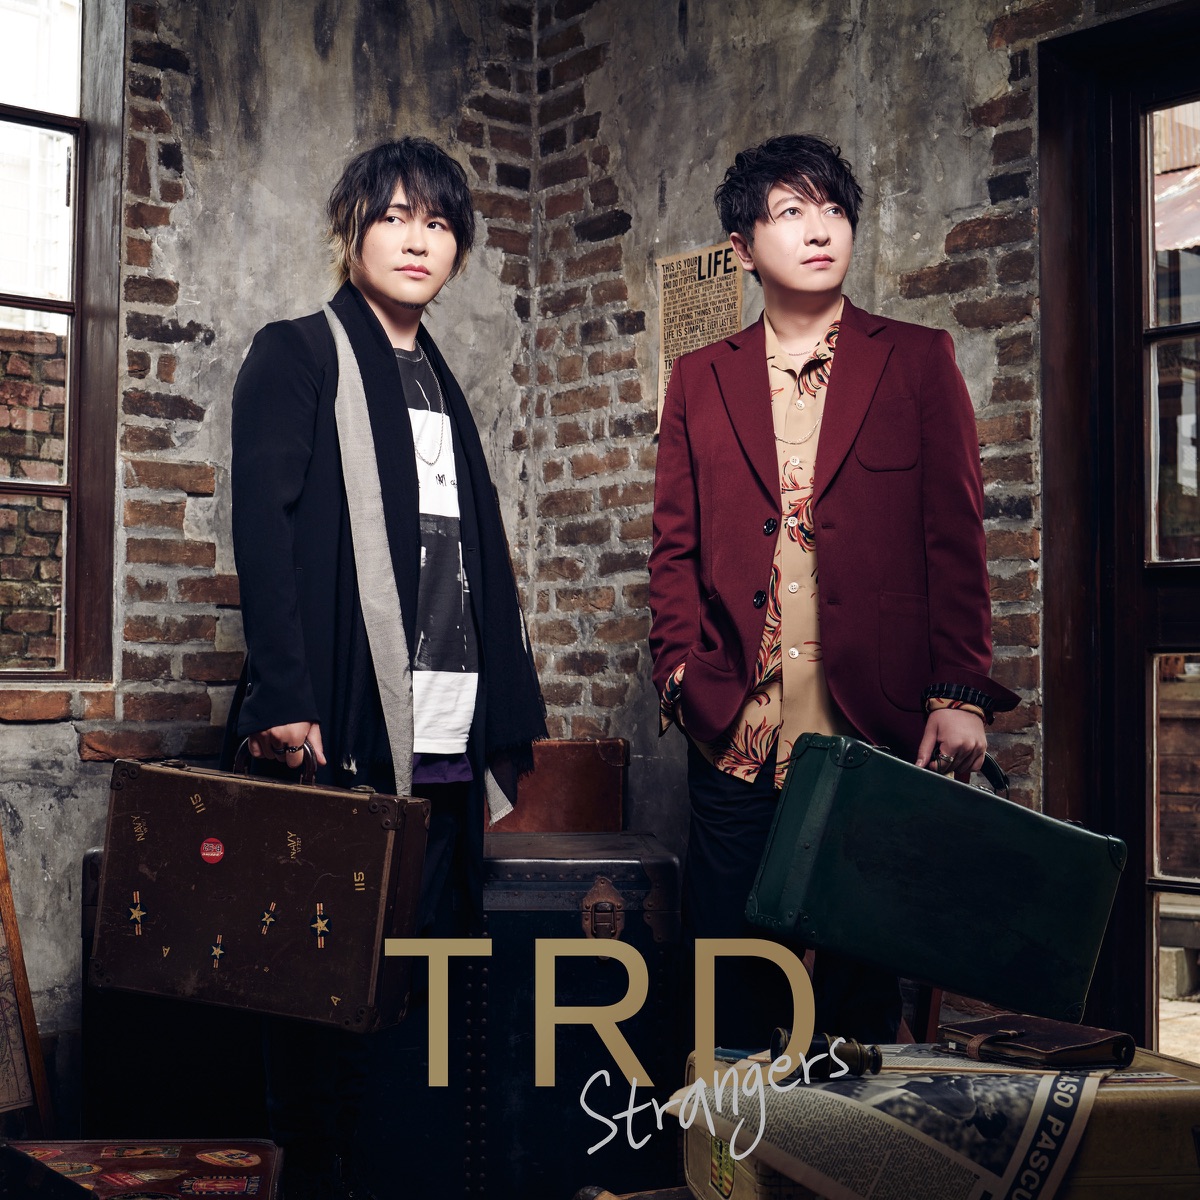 TRD - Strangers